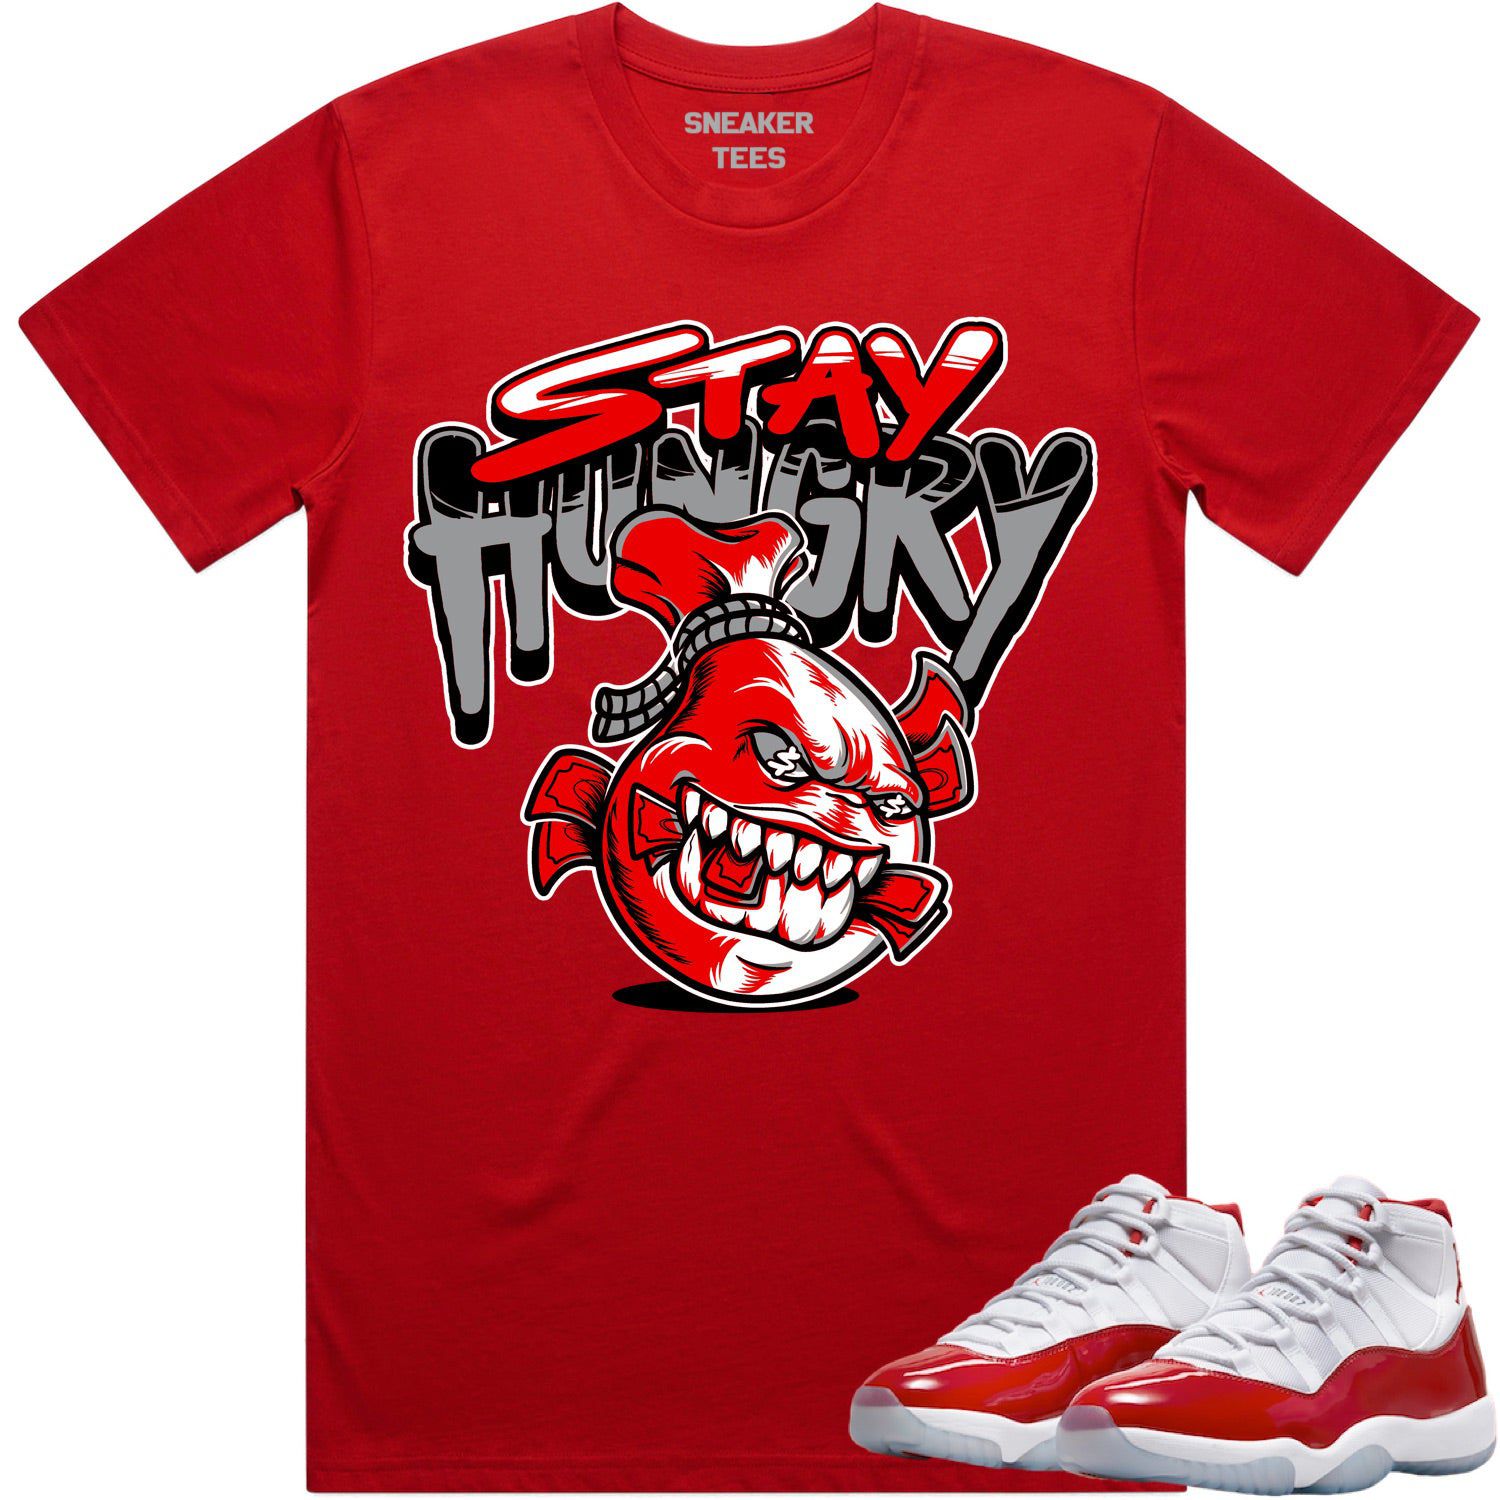 Cherry 11s Shirt - Jordan Retro 11 Cherry Shirts - Red Stay Hungry